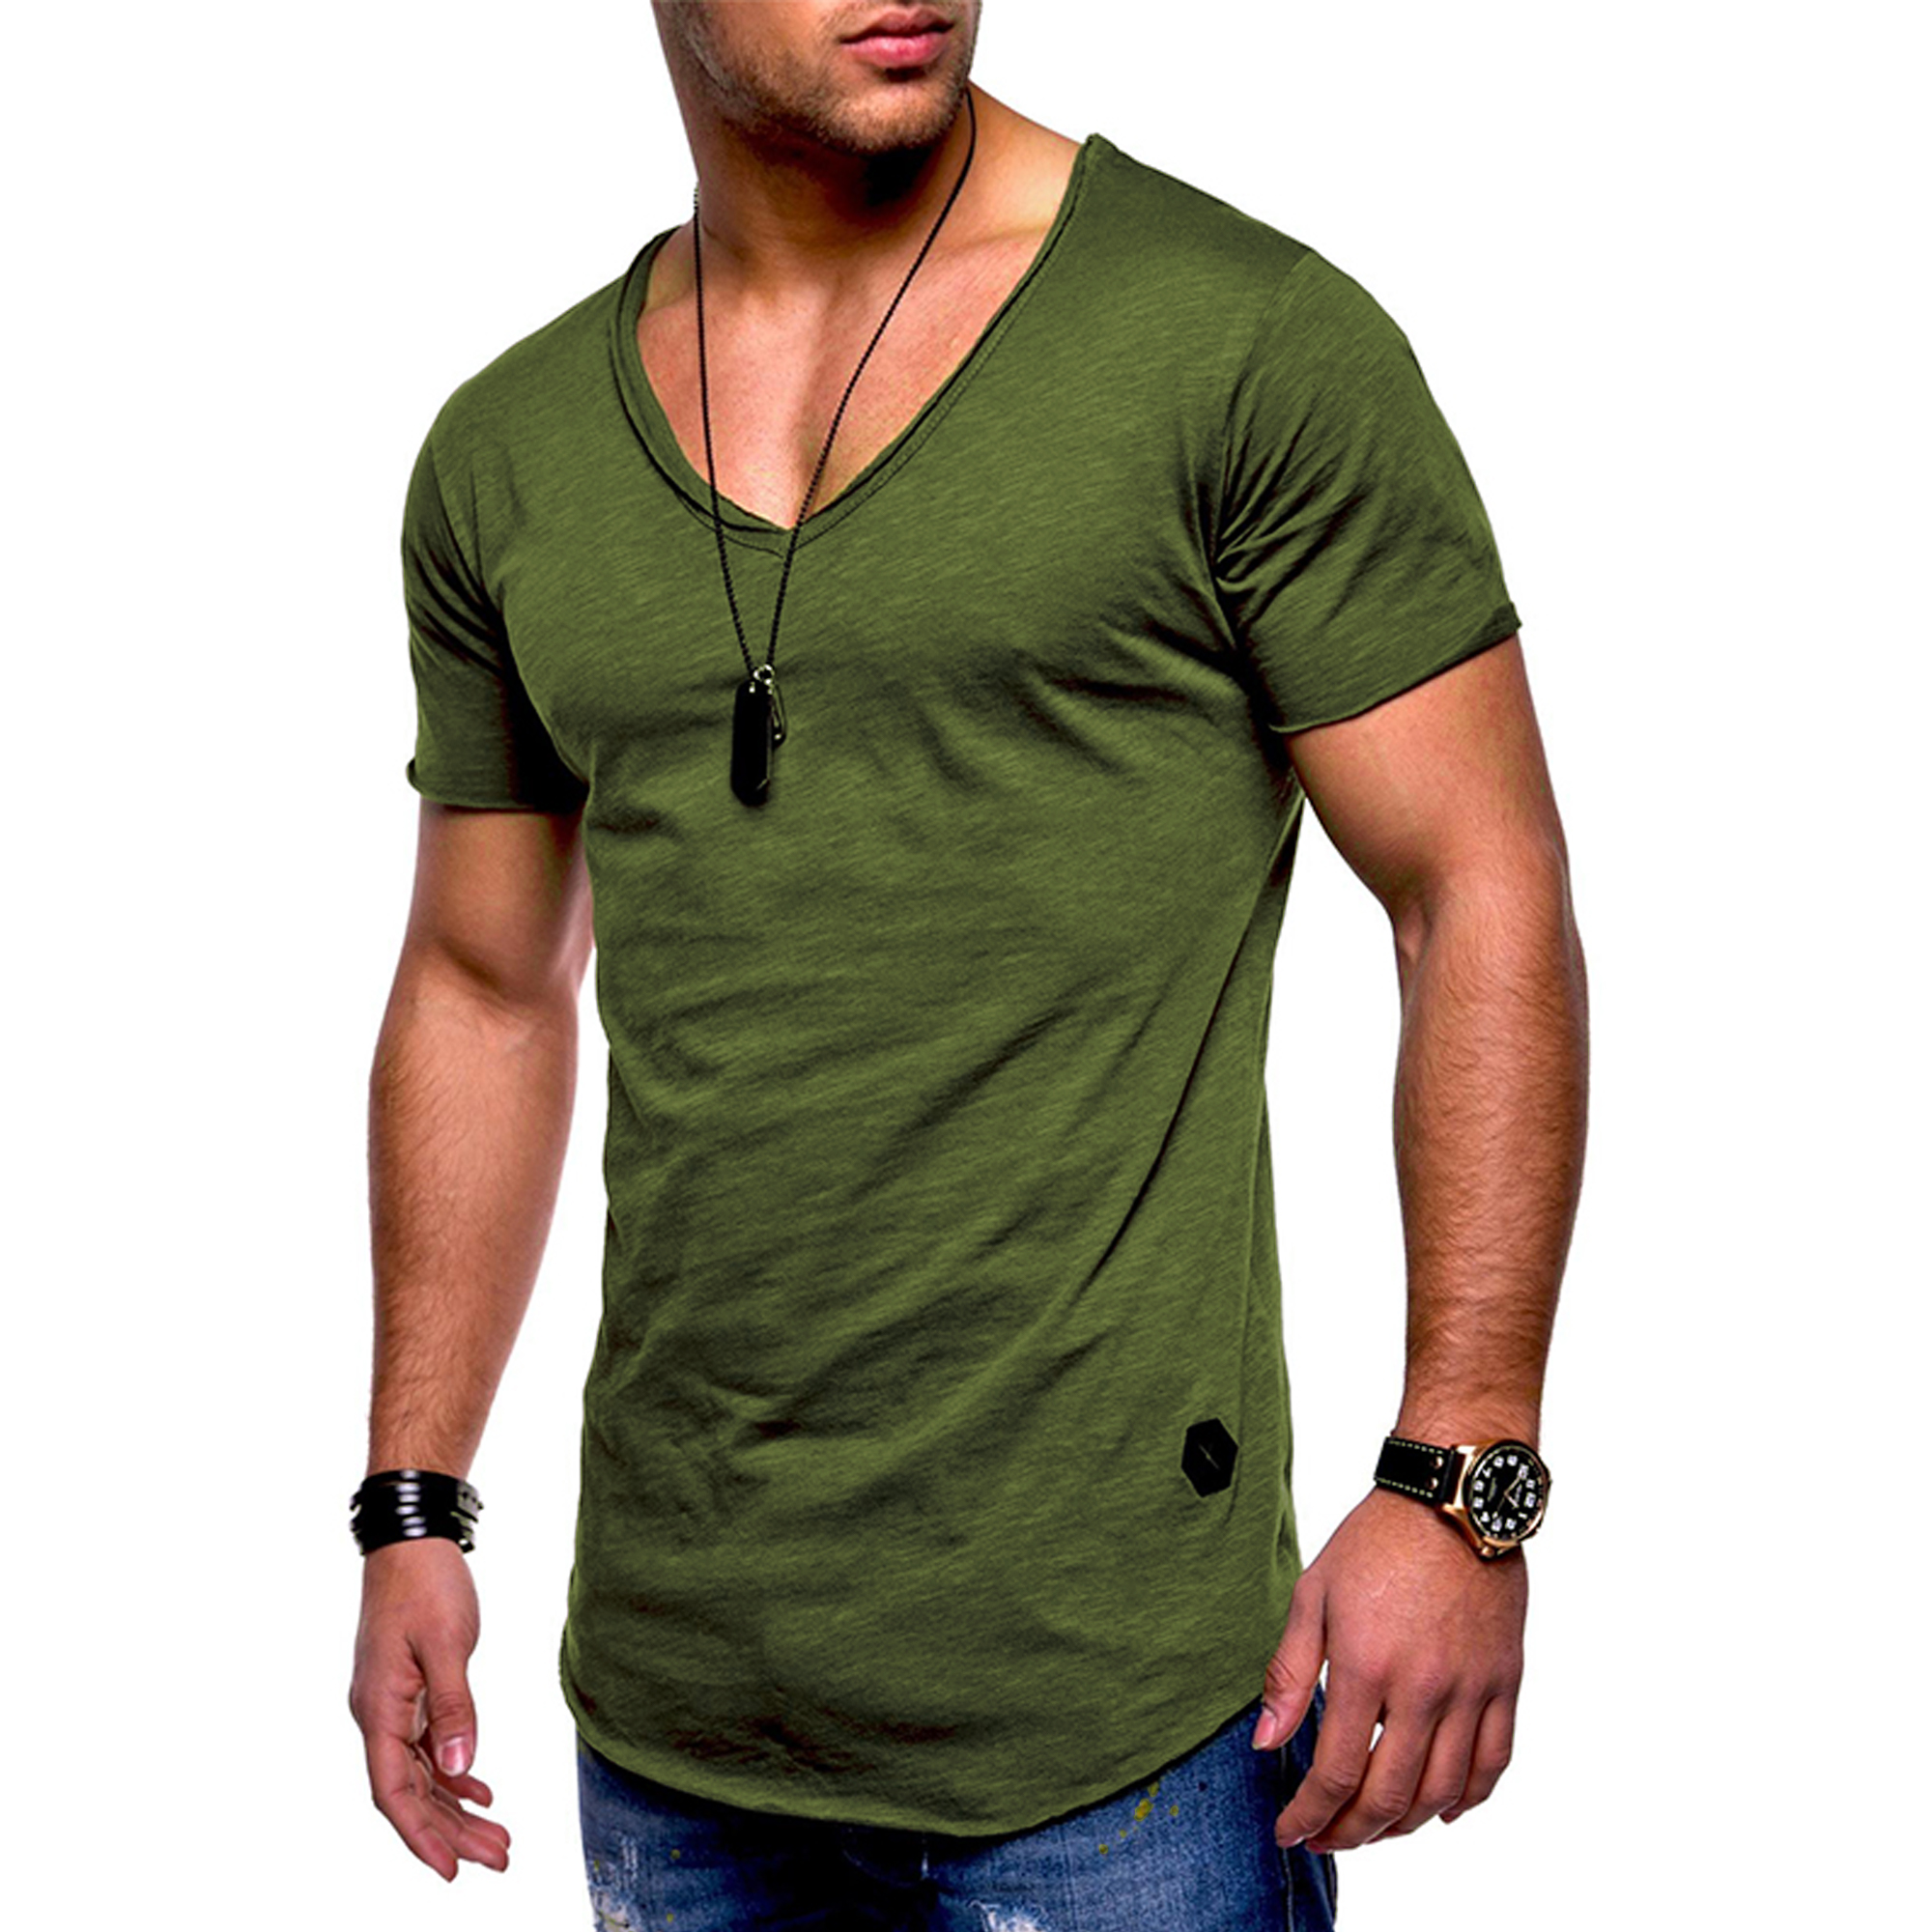 Charles Solid Color V-neck T-shirt